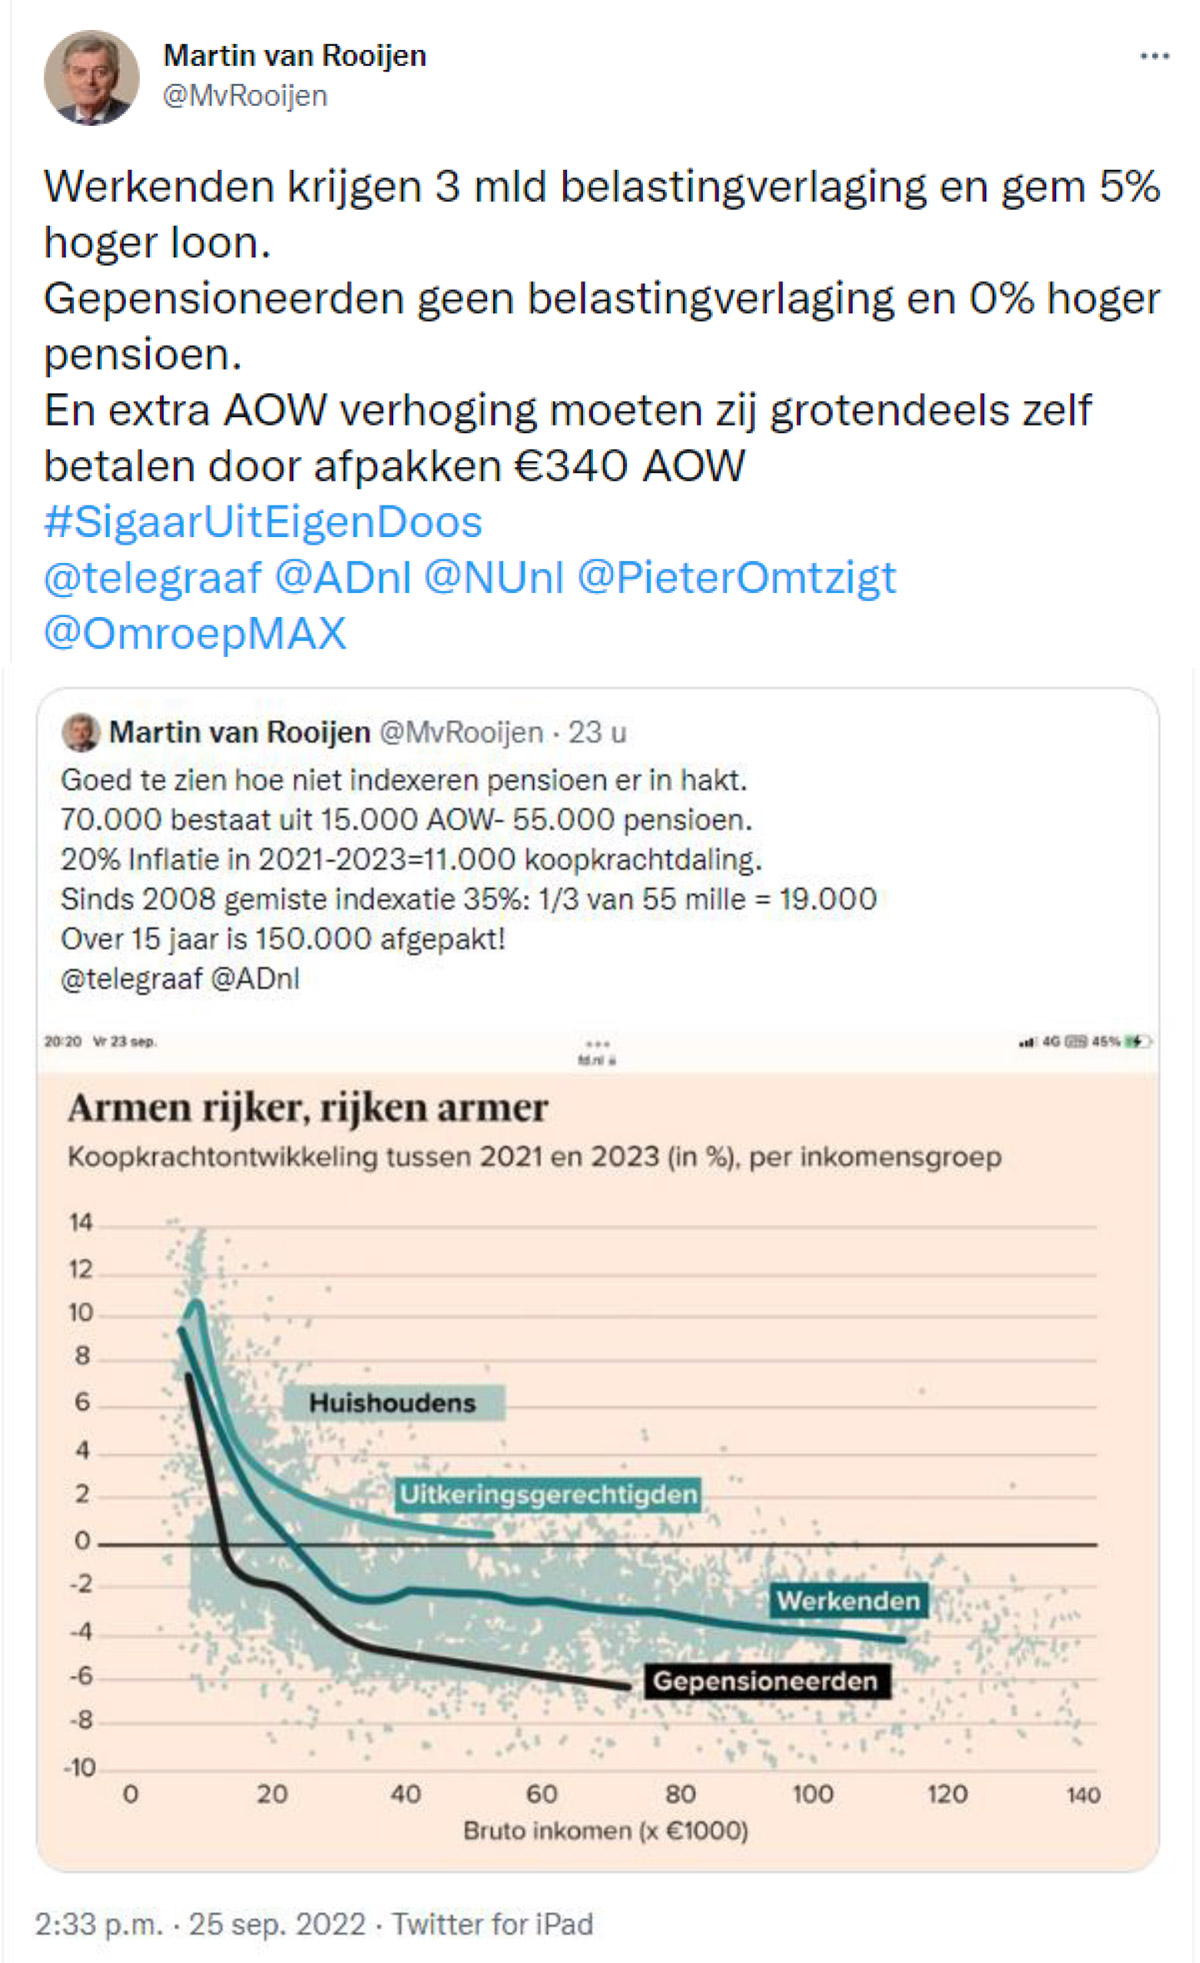 Tweet van Martin van Rooijen over daling koopdracht